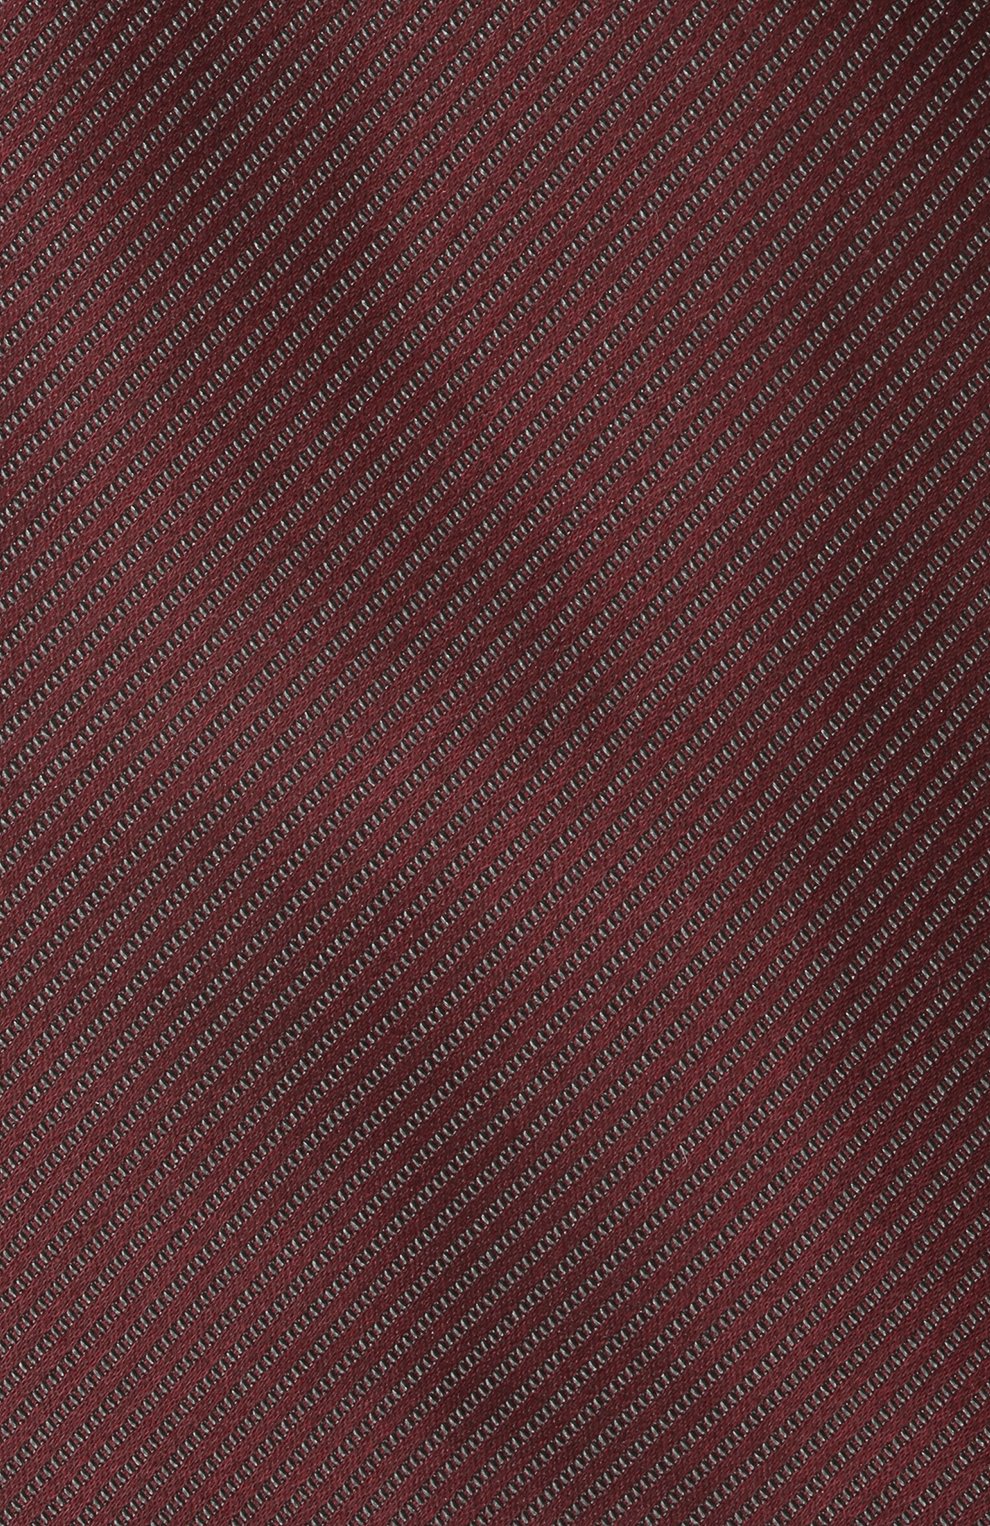 Мужской шелковый галстук TOM FORD бордового цвета, арт. 2TF05/XTF | Фото 3 (Материал: Текстиль, Шелк; Принт: Без принта)